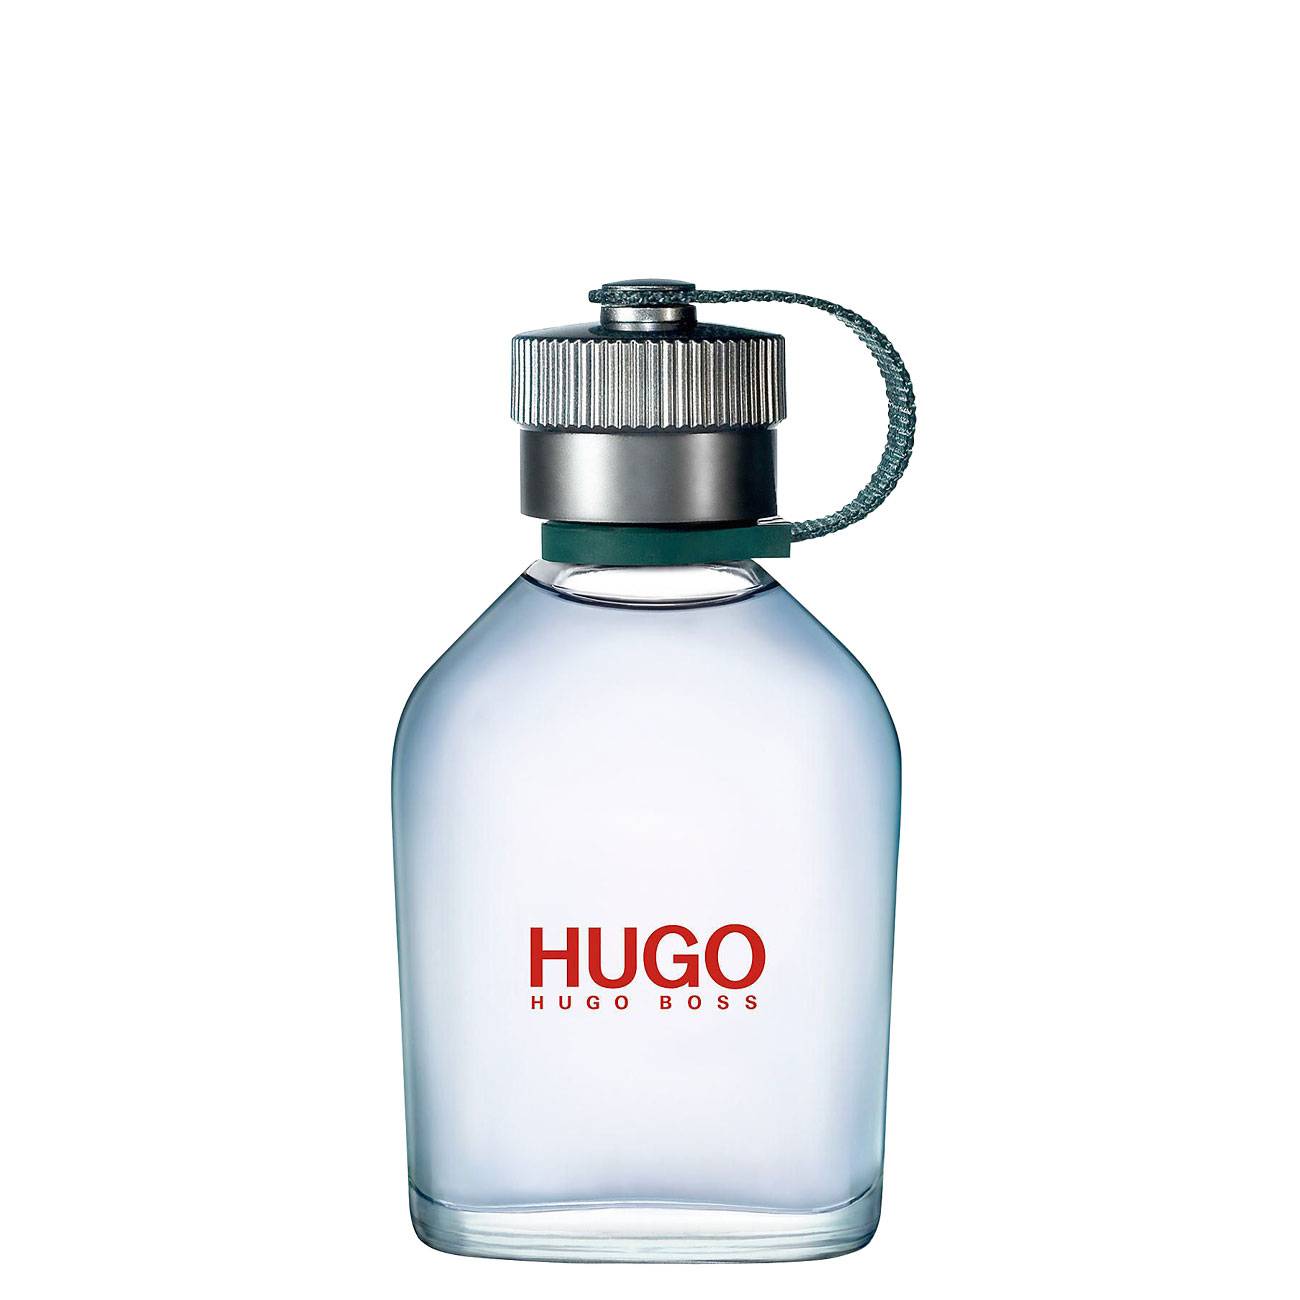 HUGO 75ml Hugo Boss bestvalue.eu